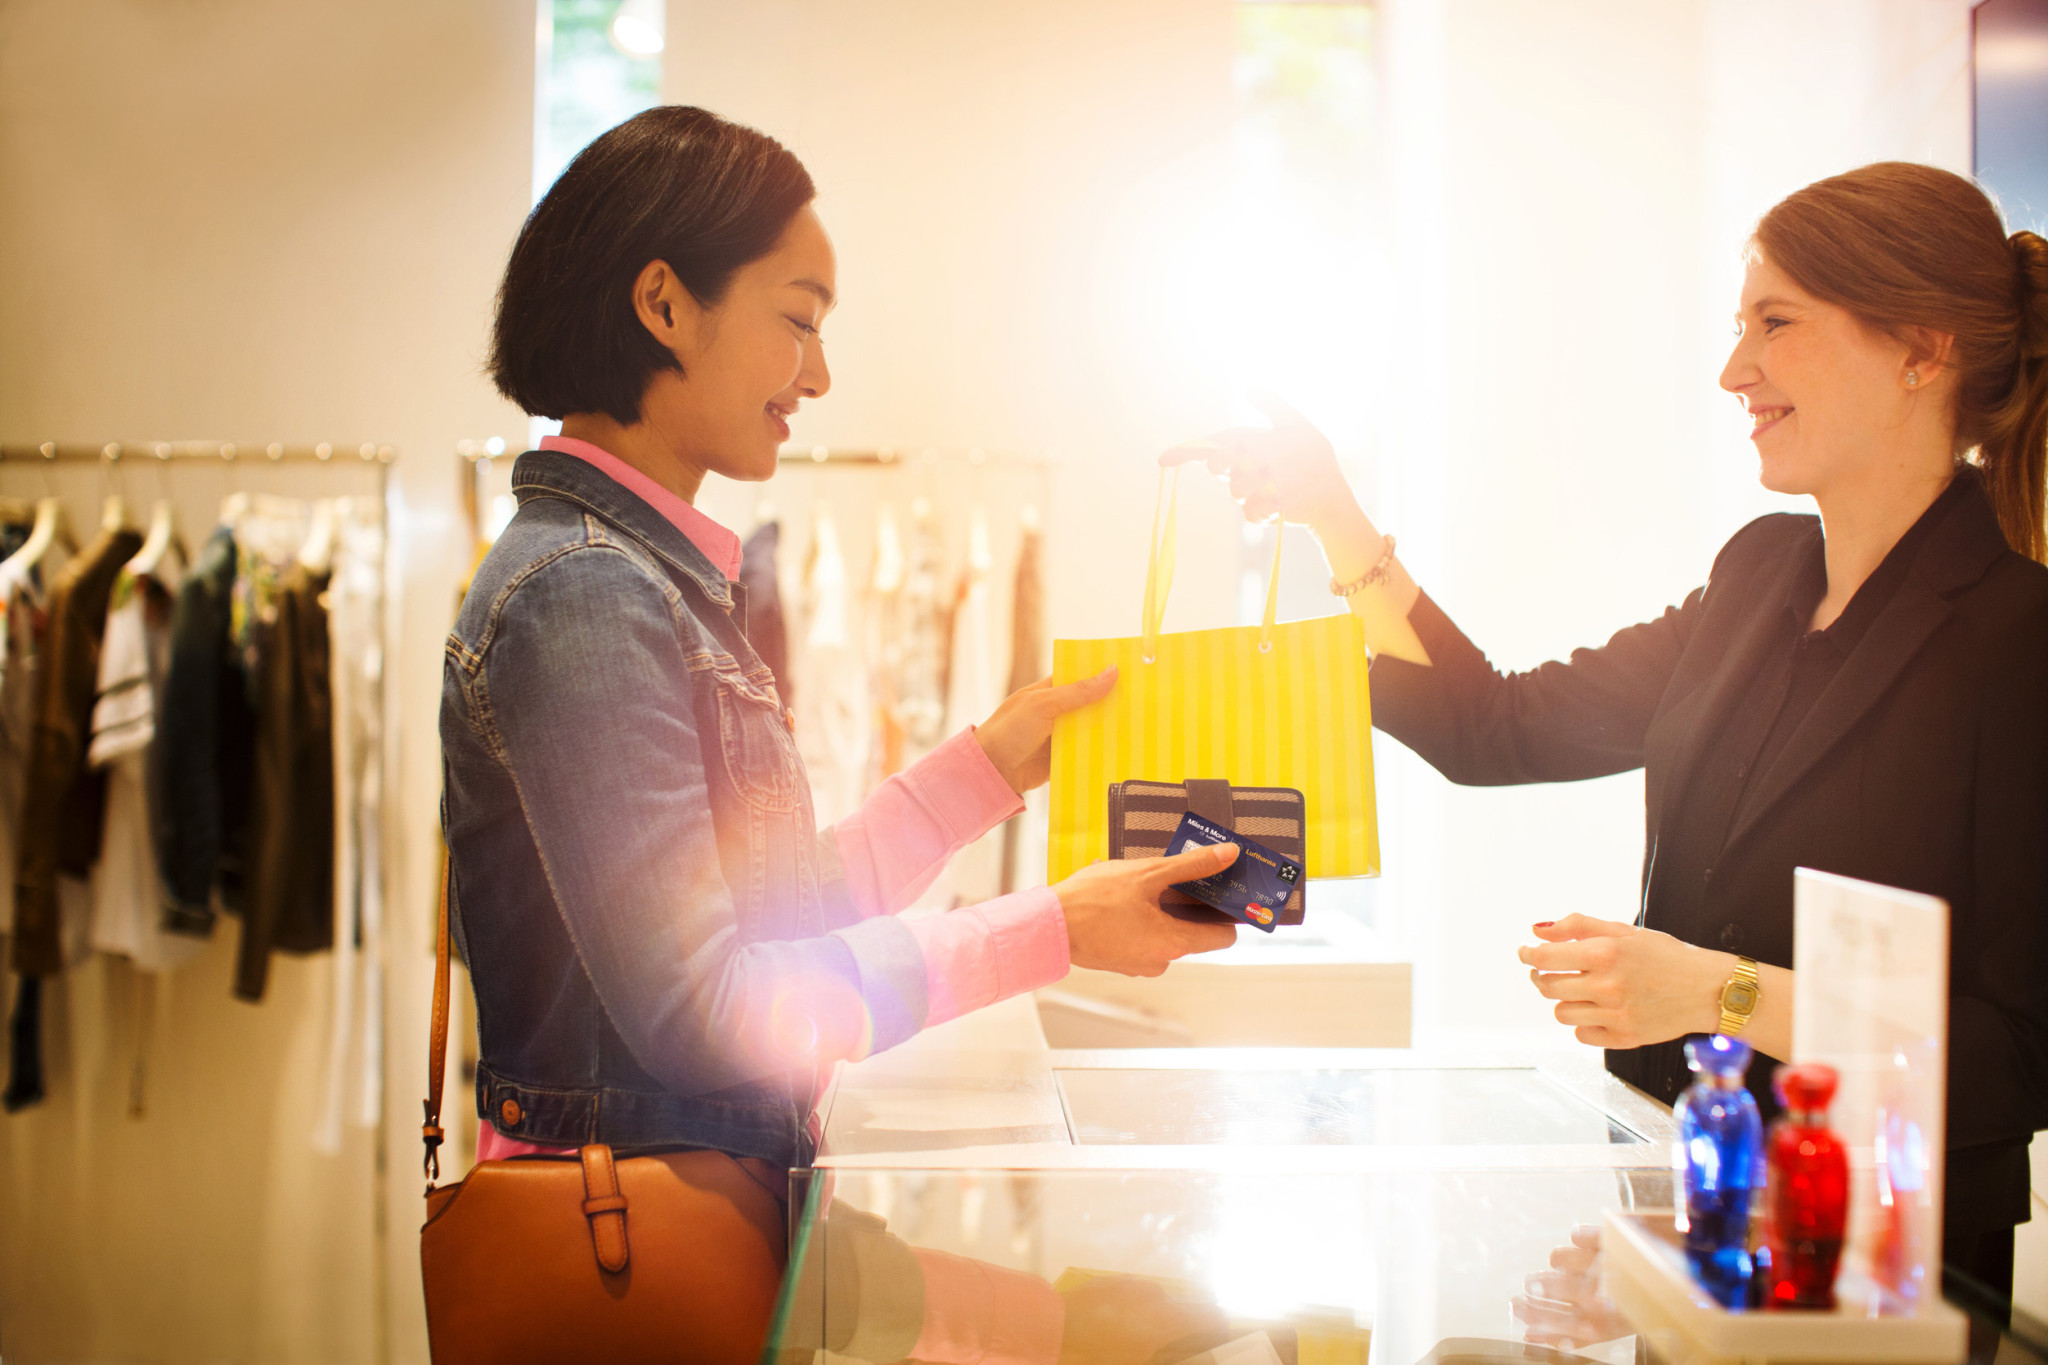 Shopping-Begeisterte sammeln beim Stadtbummel extra Prämienmeilen, wenn sie mit der Miles & More Kreditkarte bezahlen